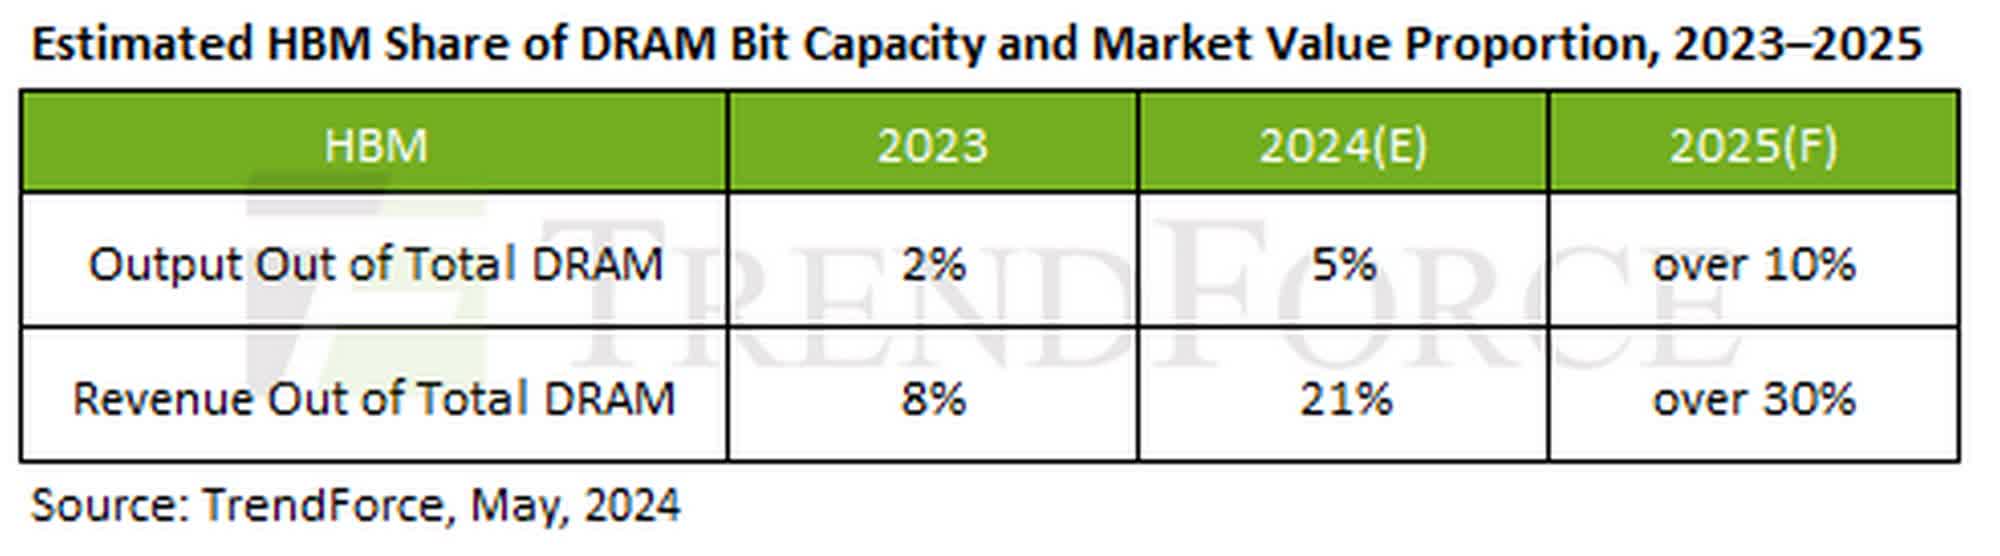 prix mémoire DDR5 pourraient augmenter raison demande croissante puces